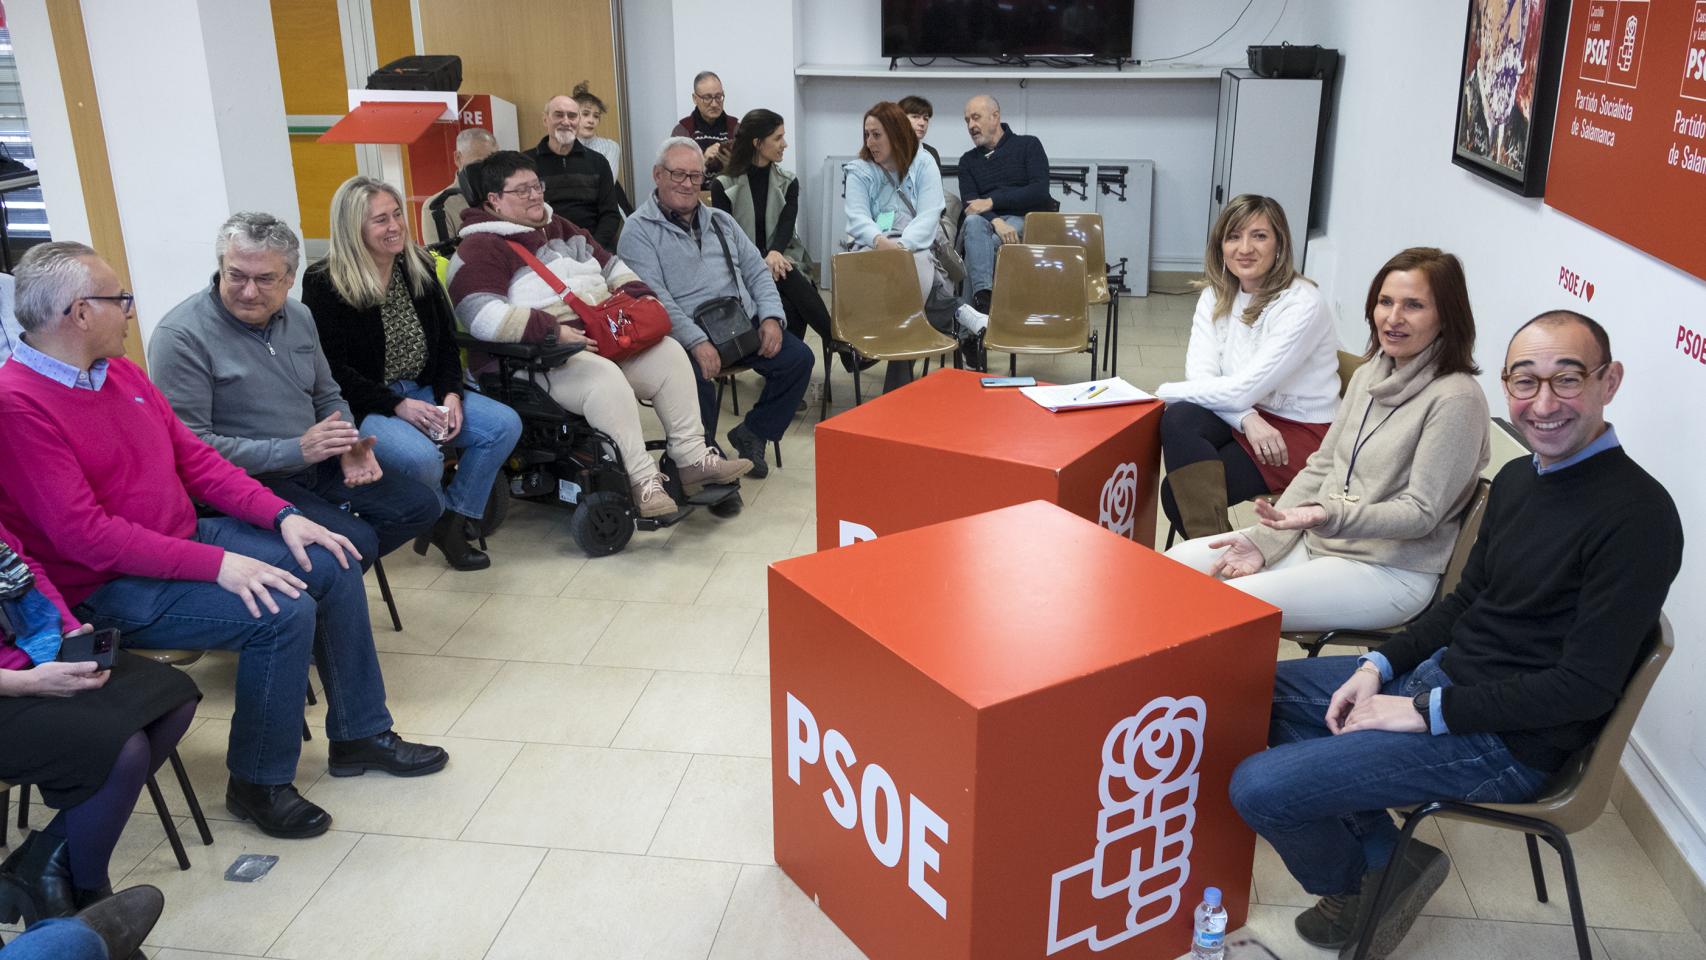 La secretaria federal de Educación del PSOE, Mari Luz Martínez Seijo, visita Salamanca con motivo de la charla coloquio “El futuro de la educación pública en la provincia”